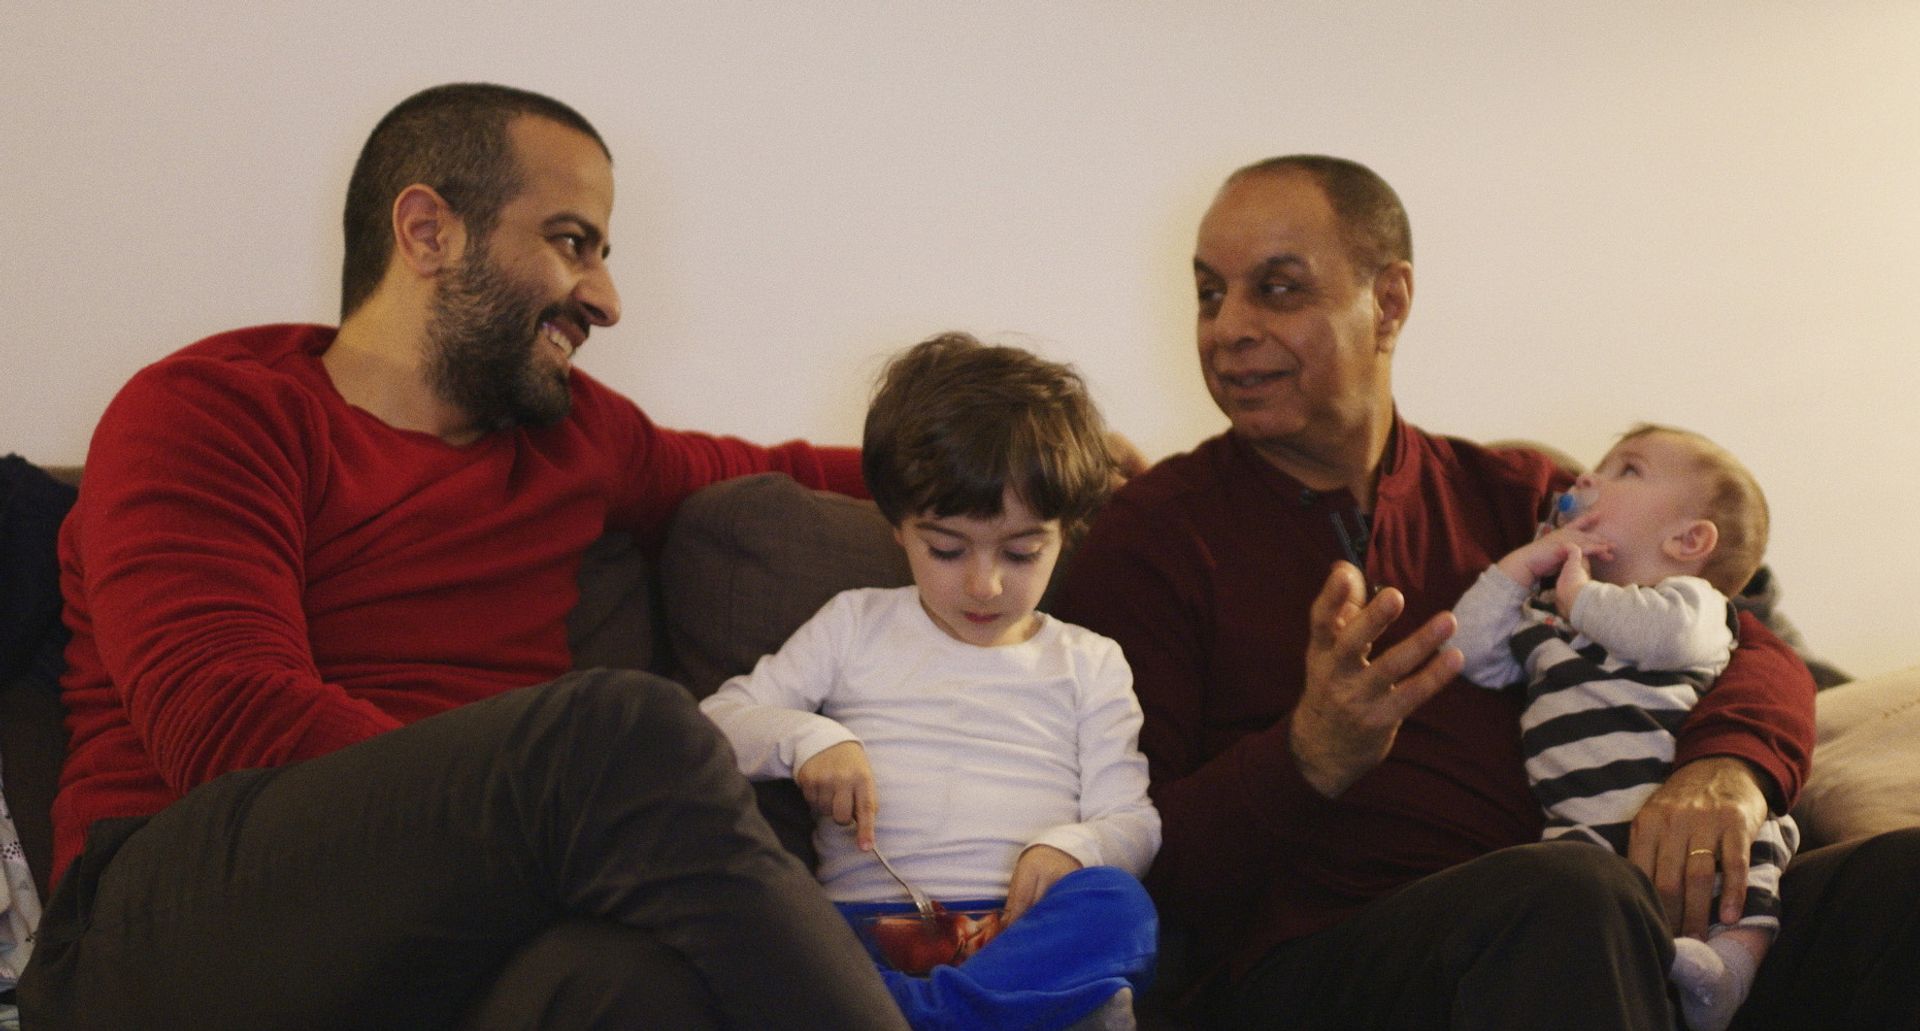 Verzwegen vluchtverleden besproken in EOdoc ‘Mijn vader, Nour en ik’